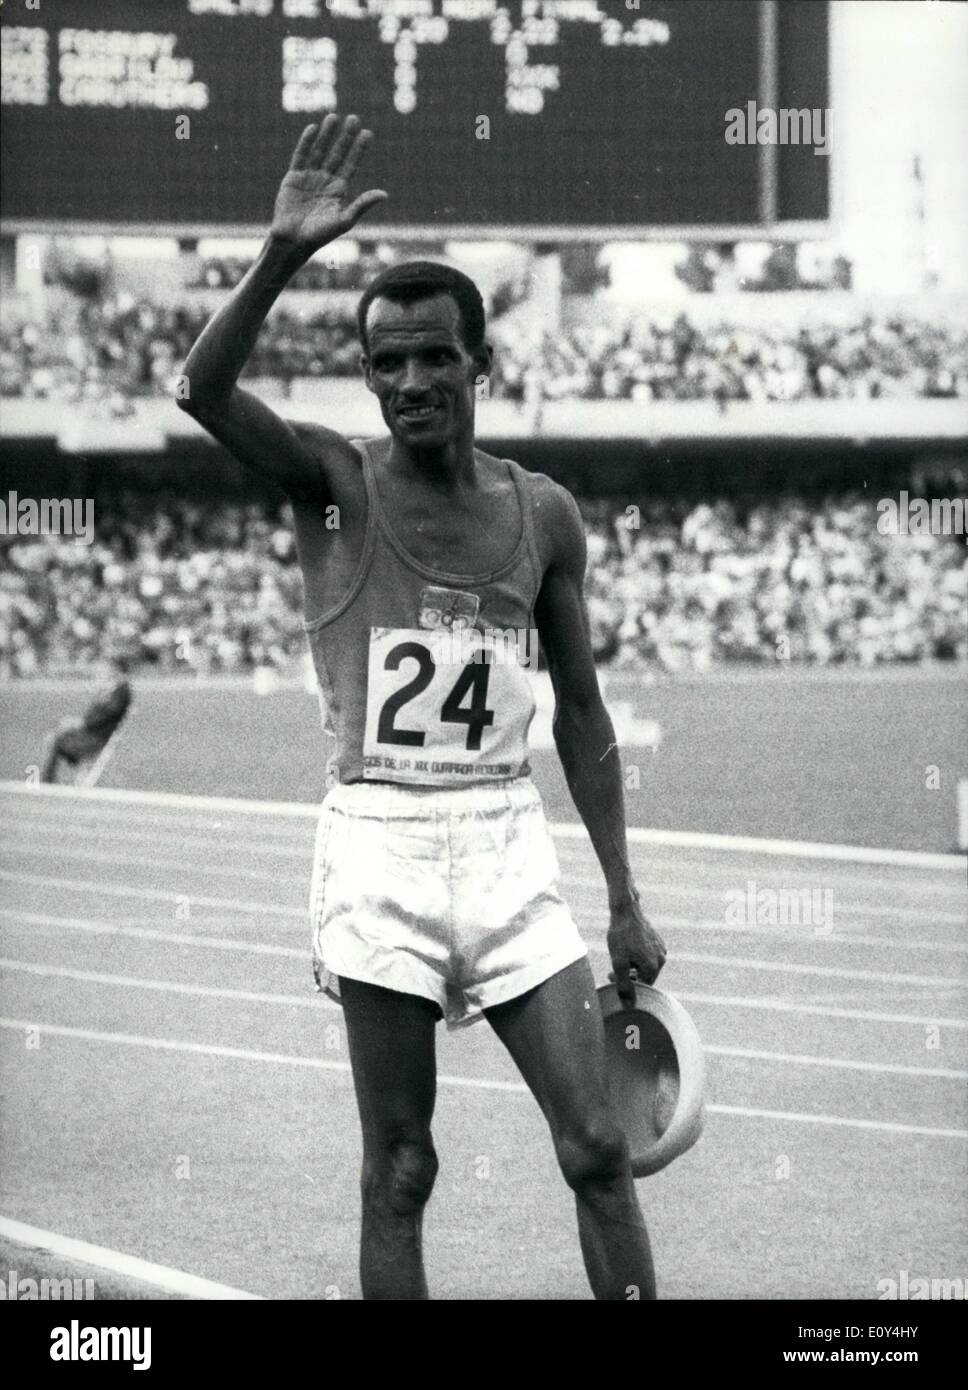 10 octobre 1968 - Le Jeux Olympiques de 1968 à Mexico. Ethiopian remporte la médaille d'or du marathon. : M. Wolde, de l'Éthiopie, reconnaît les acclamations de la foule après qu'il avait gagné le martahon dans 2h. 20 minutes 26,4 secondes dans le Jeux Olympiques de Mexico. Banque D'Images